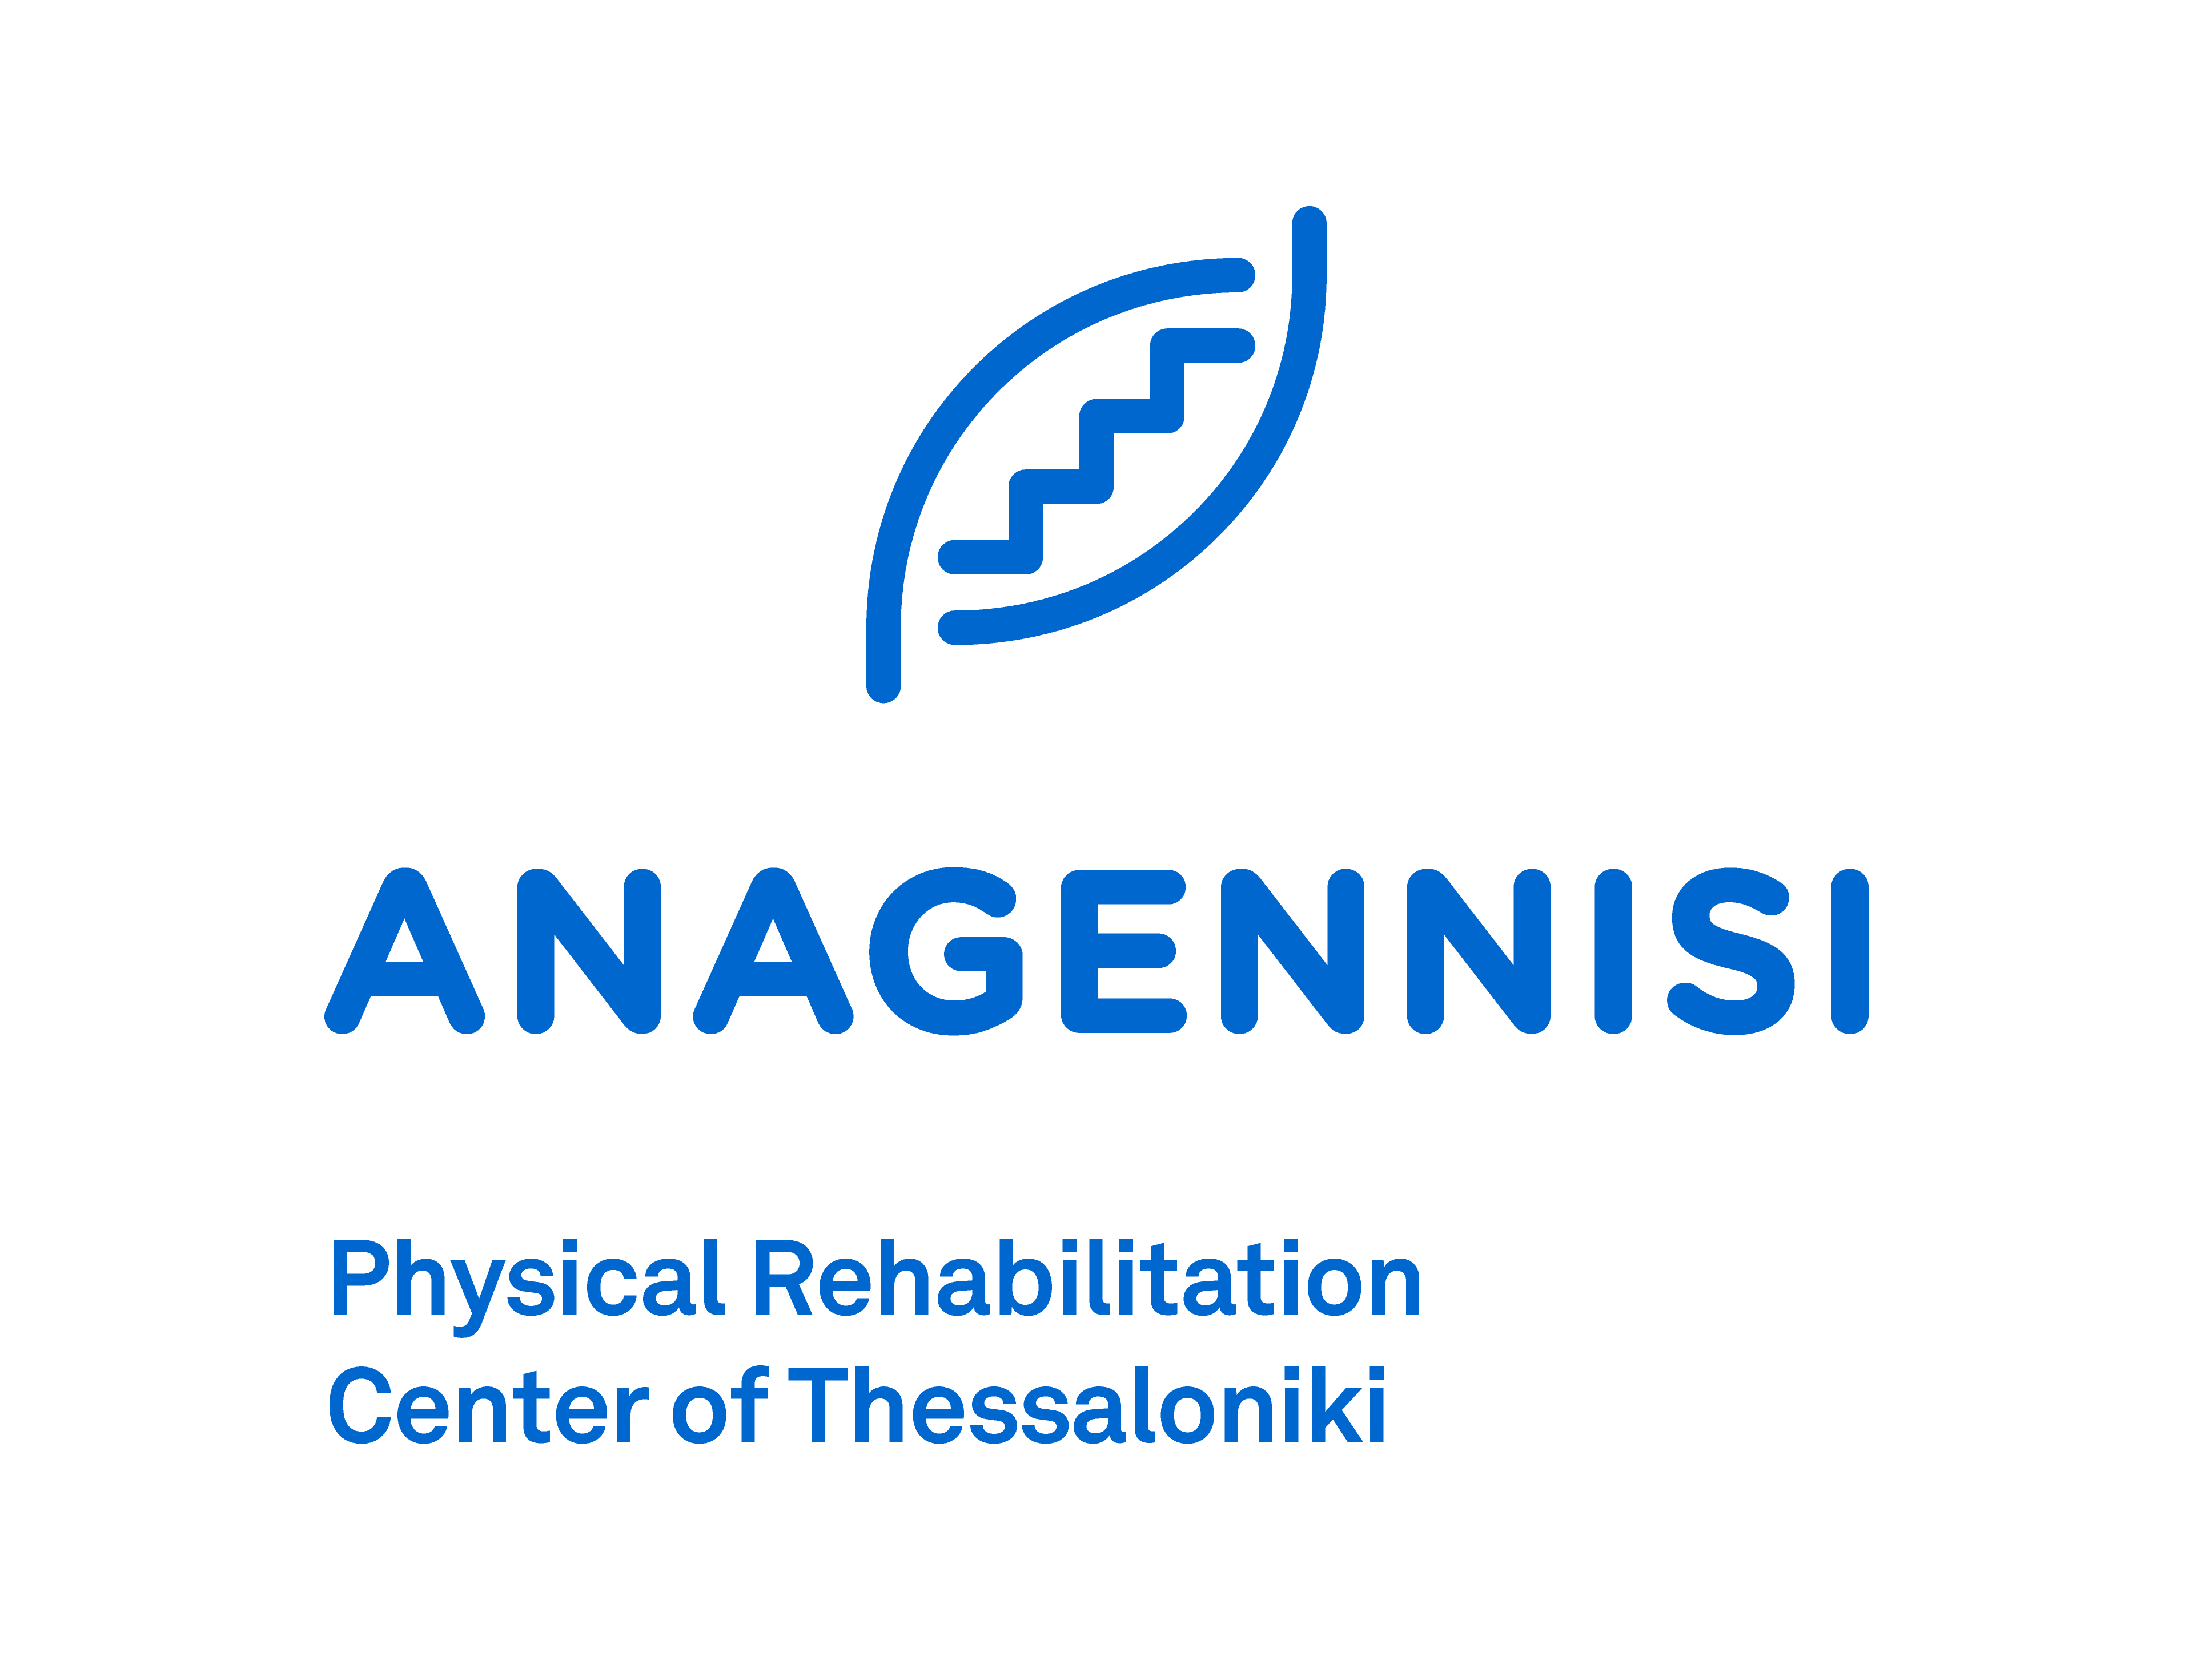 Anagennisi new logo